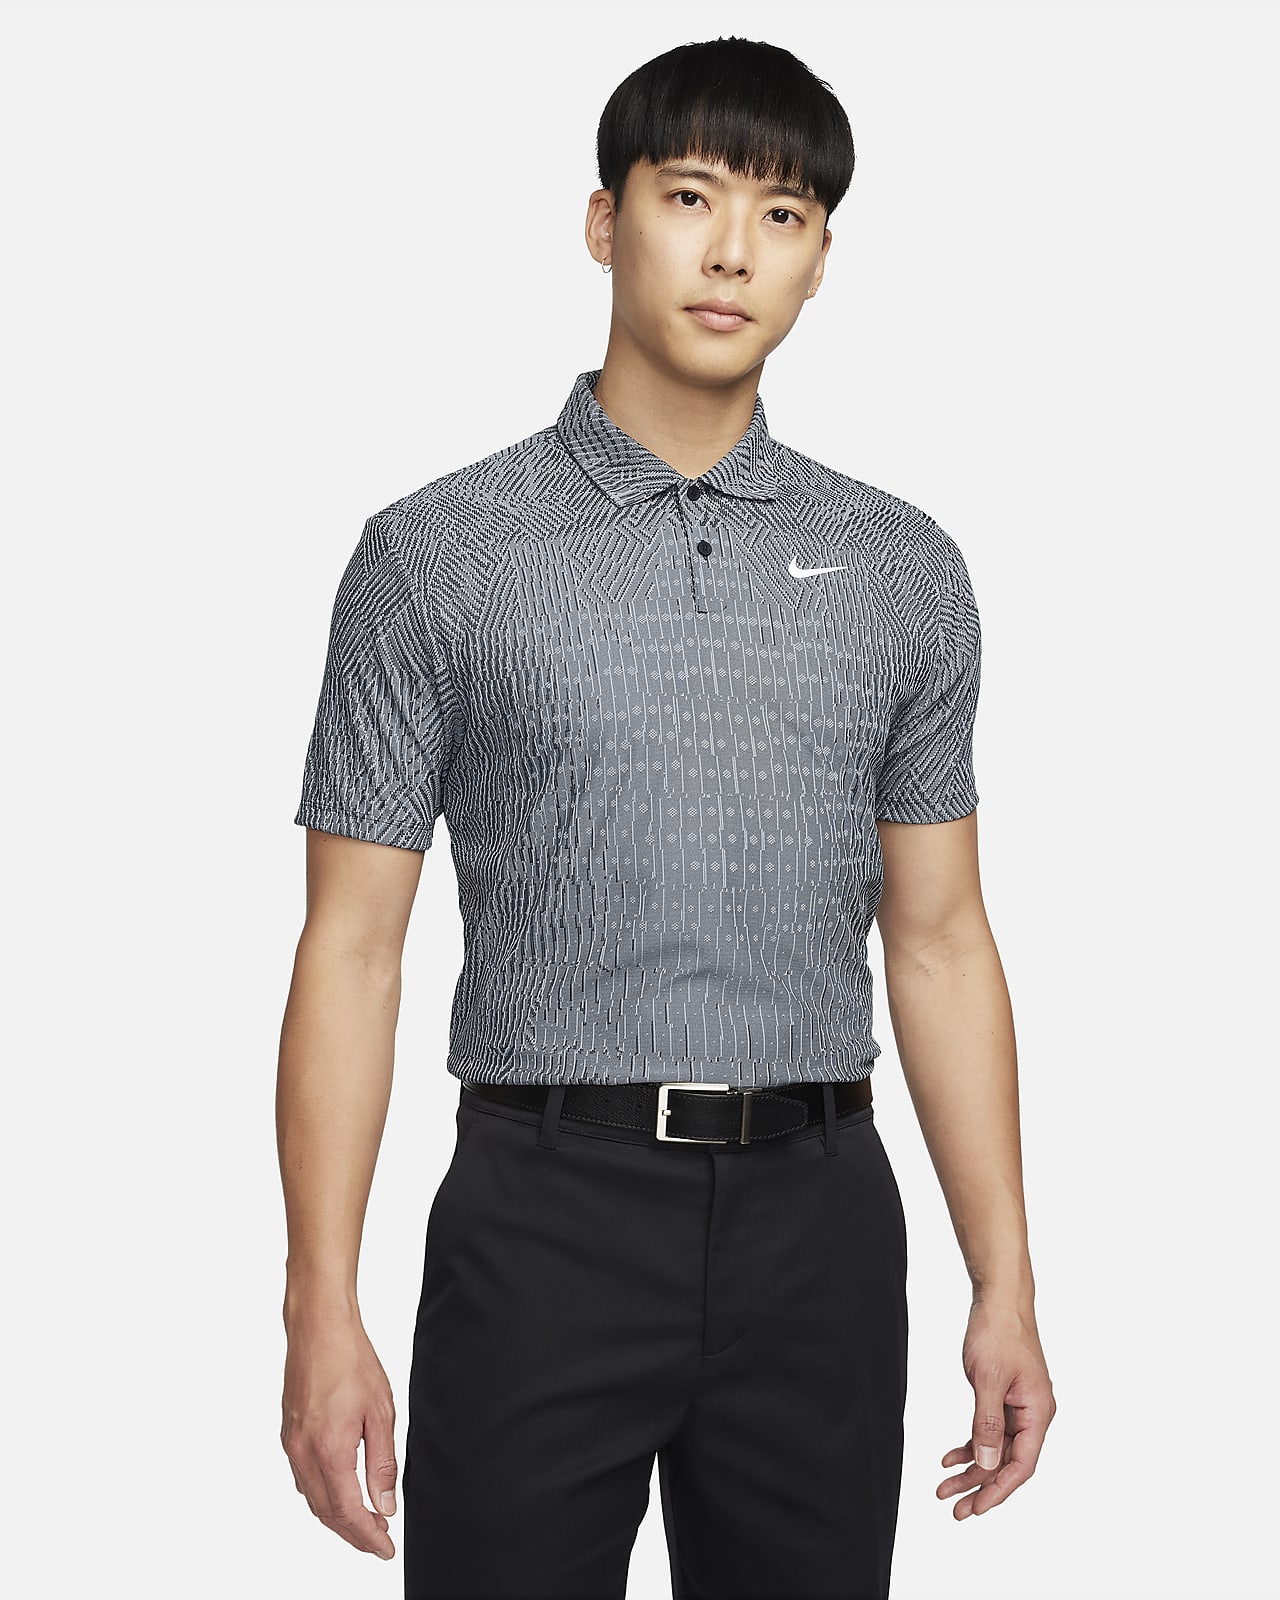 Nike Tour Dri-FIT ADV Erkek Golf Polo Üstü